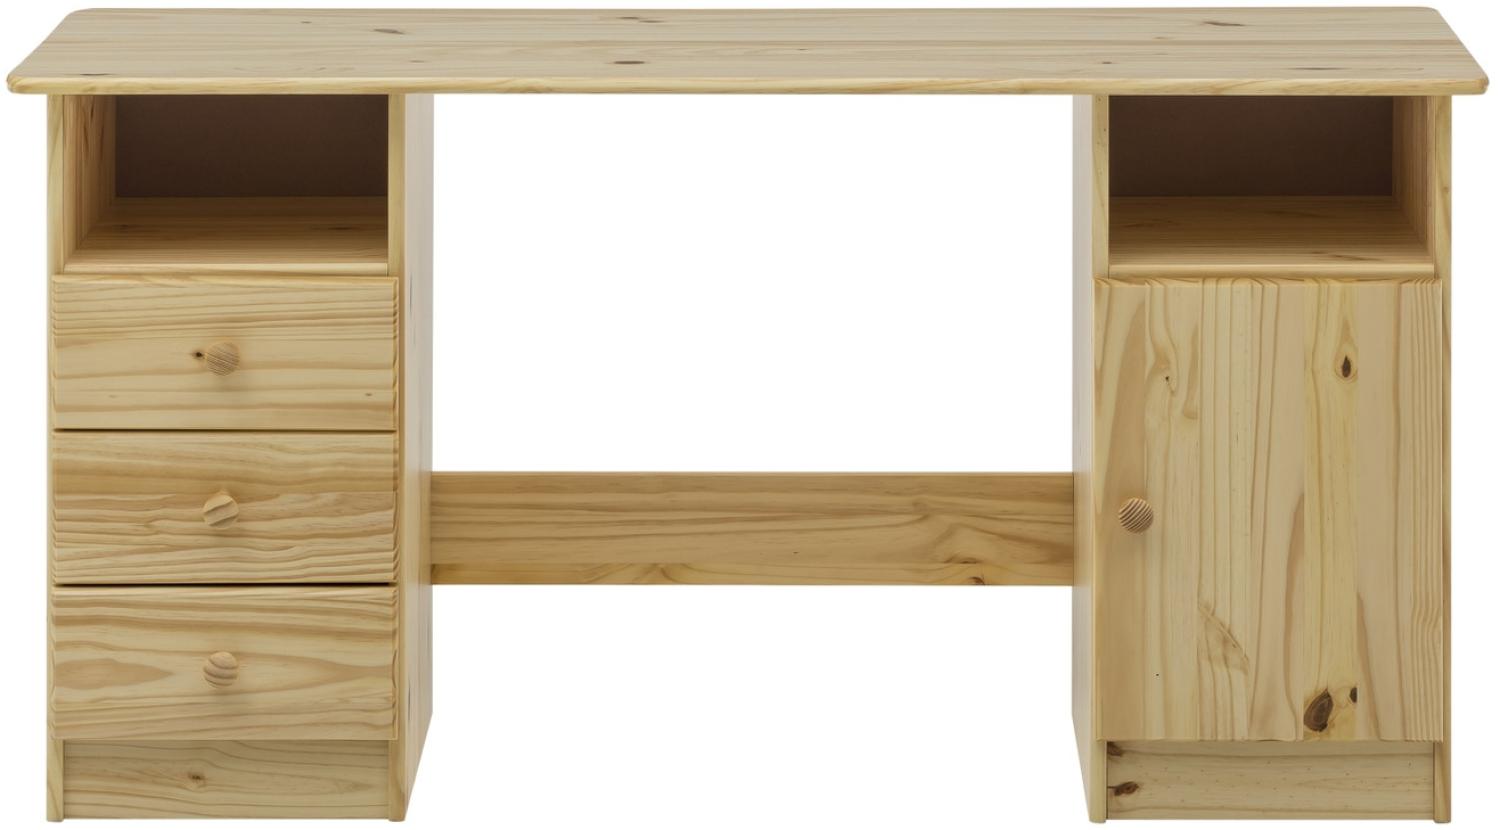 Schreibtisch mit 3 Schubladen und einer Tür, Kiefer massiv Natur lackiert, 144 x 54 x 73 cm Bild 1